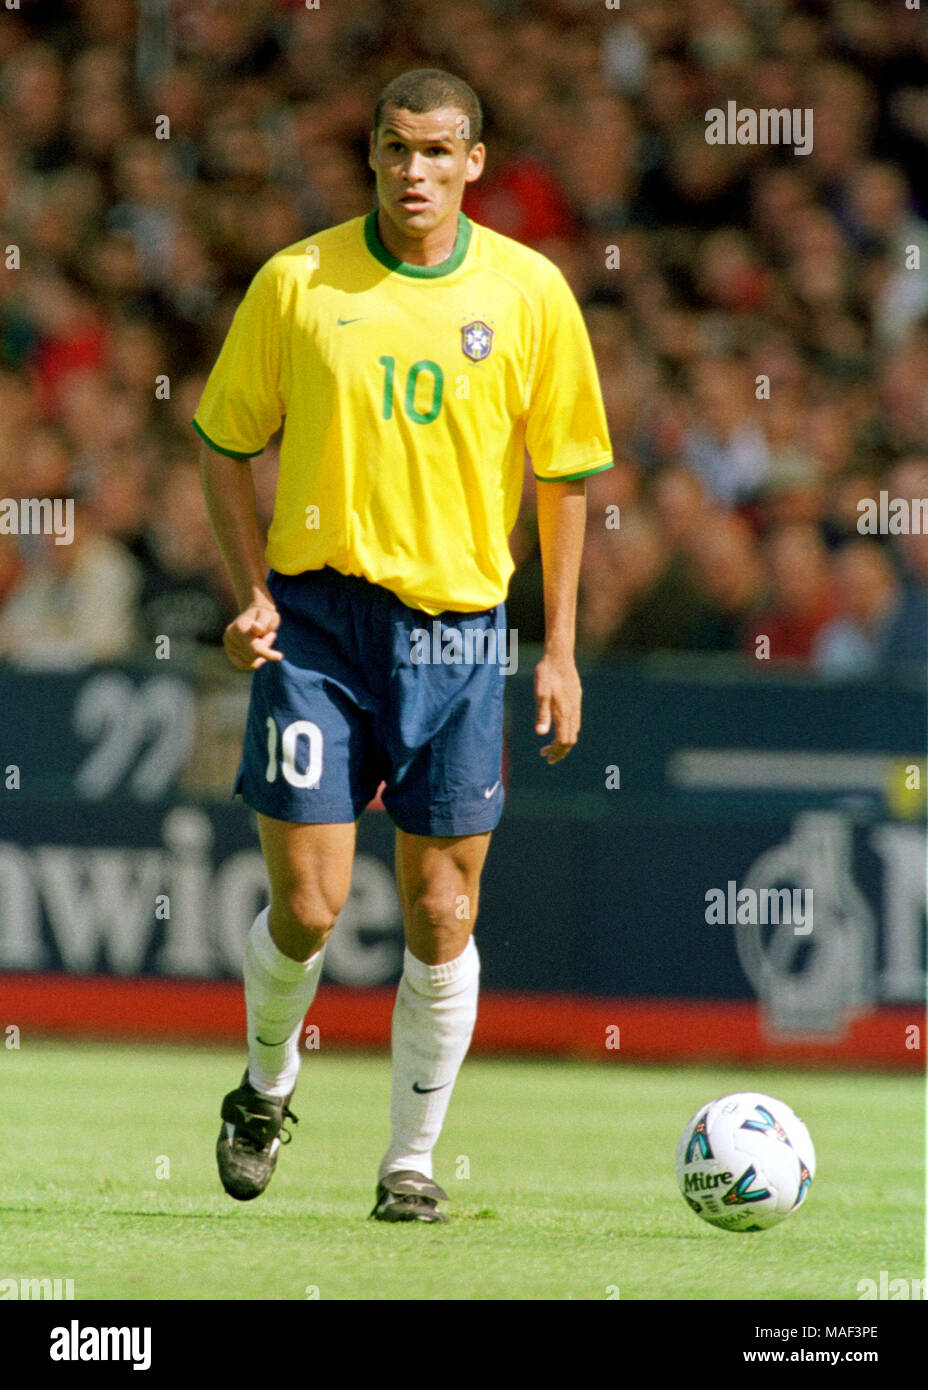 Le stade de Wembley à Londres, Angleterre 27.5.2000, football, match amical, l'Angleterre contre le Brésil 1:1 --- RIVALDO (BRA) Banque D'Images